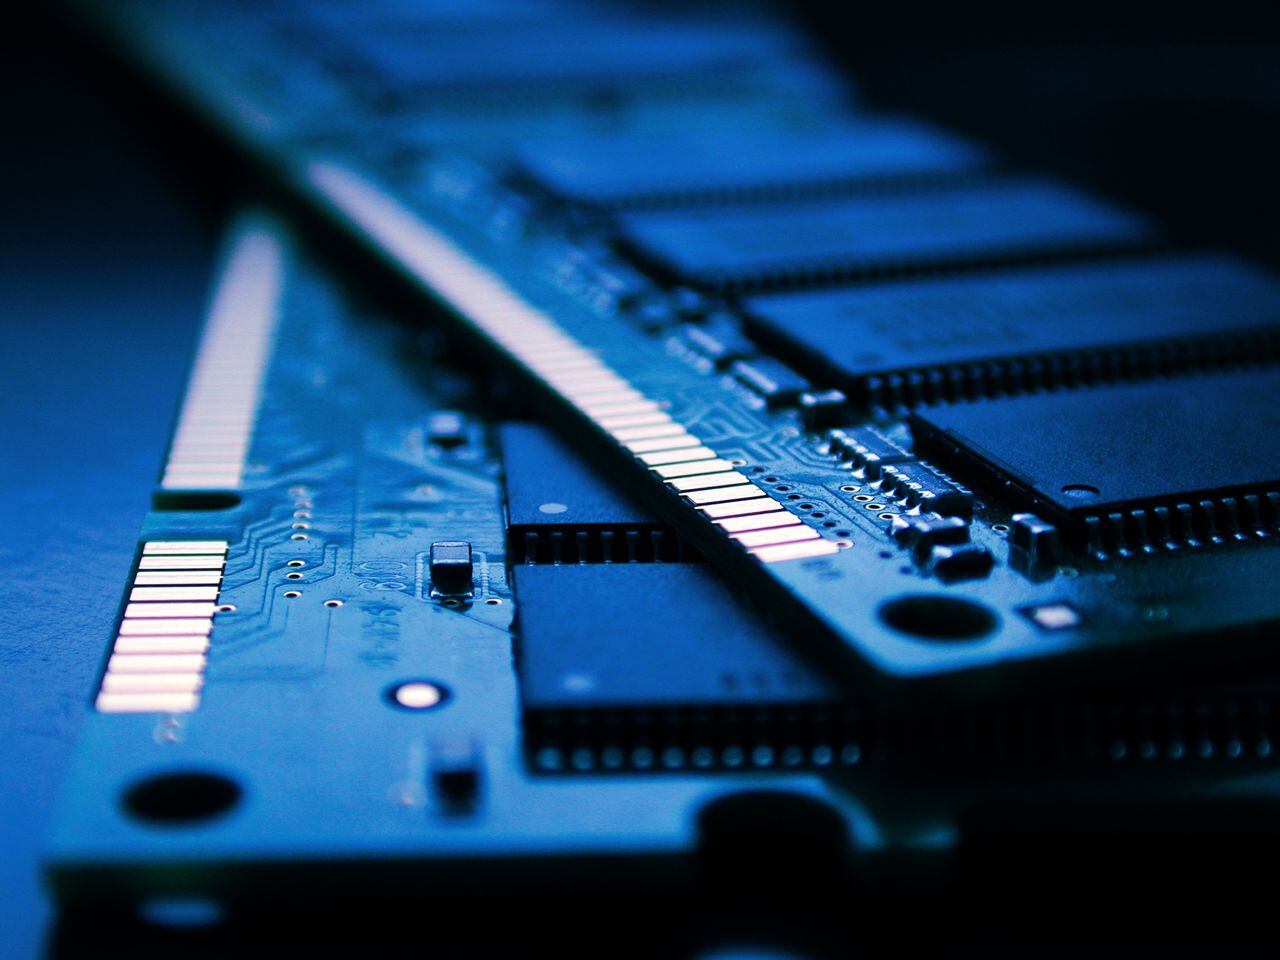 Averigue cuánta memoria RAM tiene su computador con este paso a paso detallado y práctico.